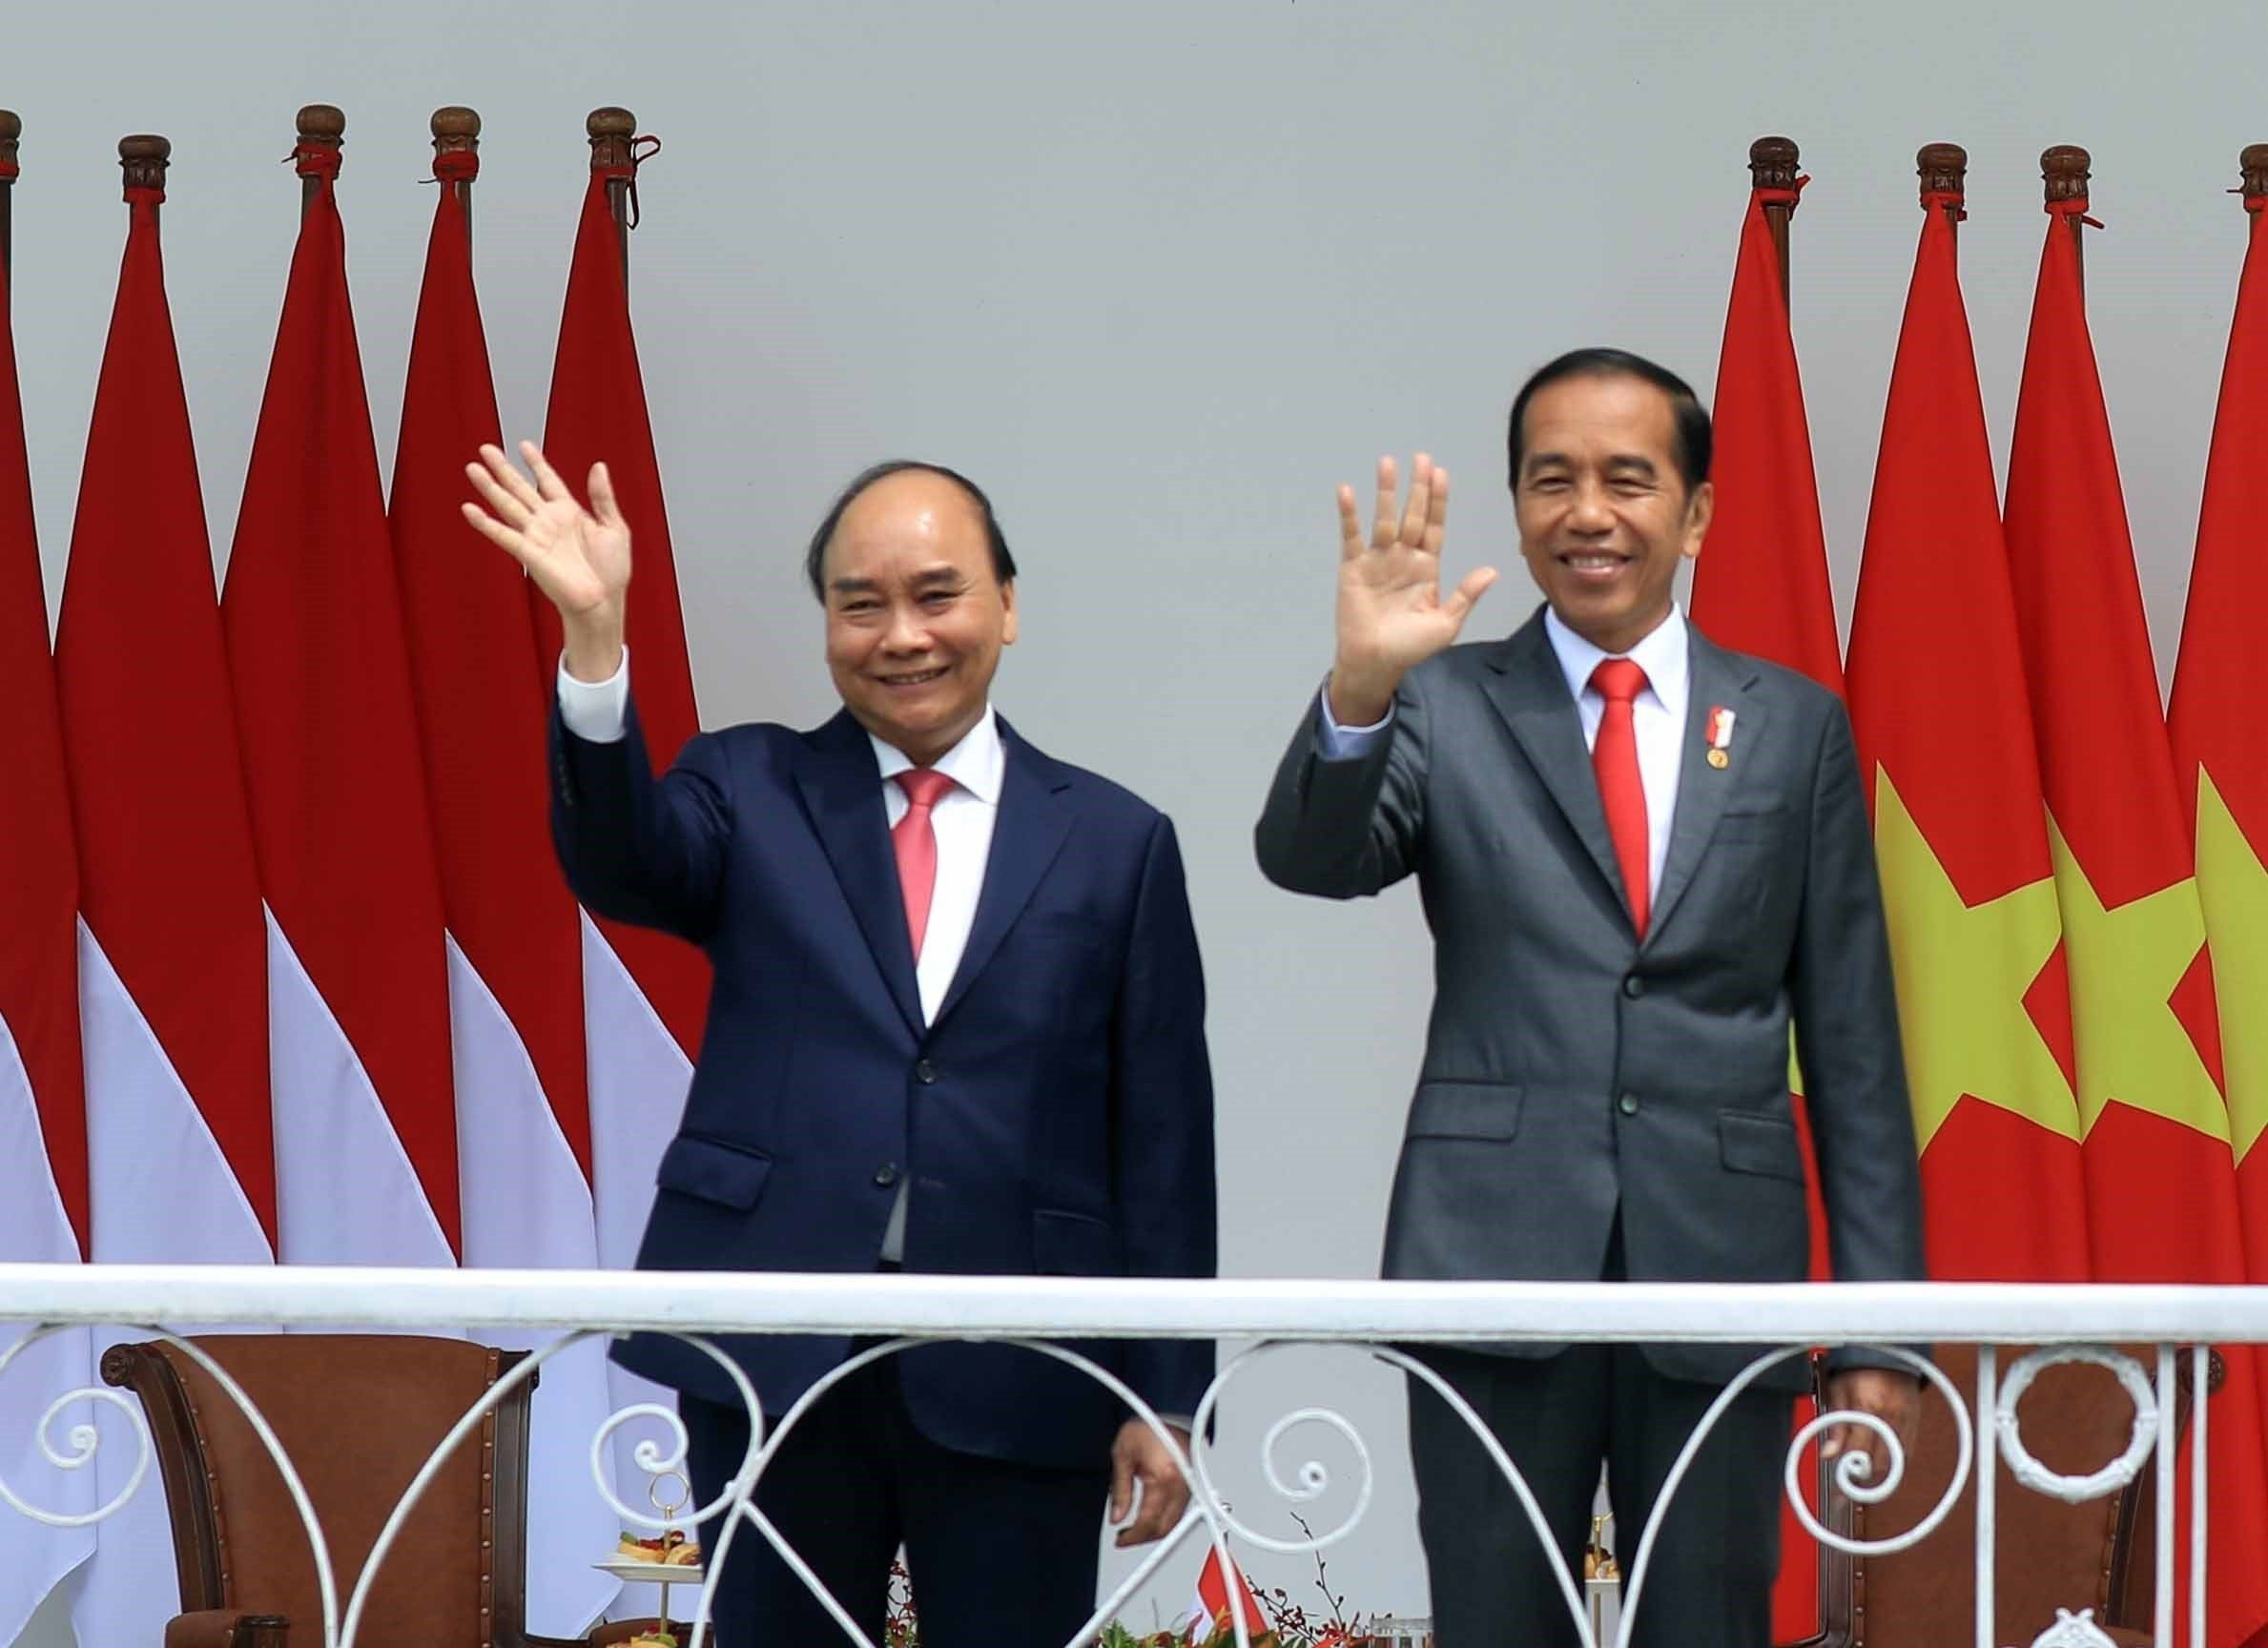 Chuyến thăm mở ra cơ hội mới nâng tầm hợp tác Việt Nam - Indonesia lên tầm cao mới